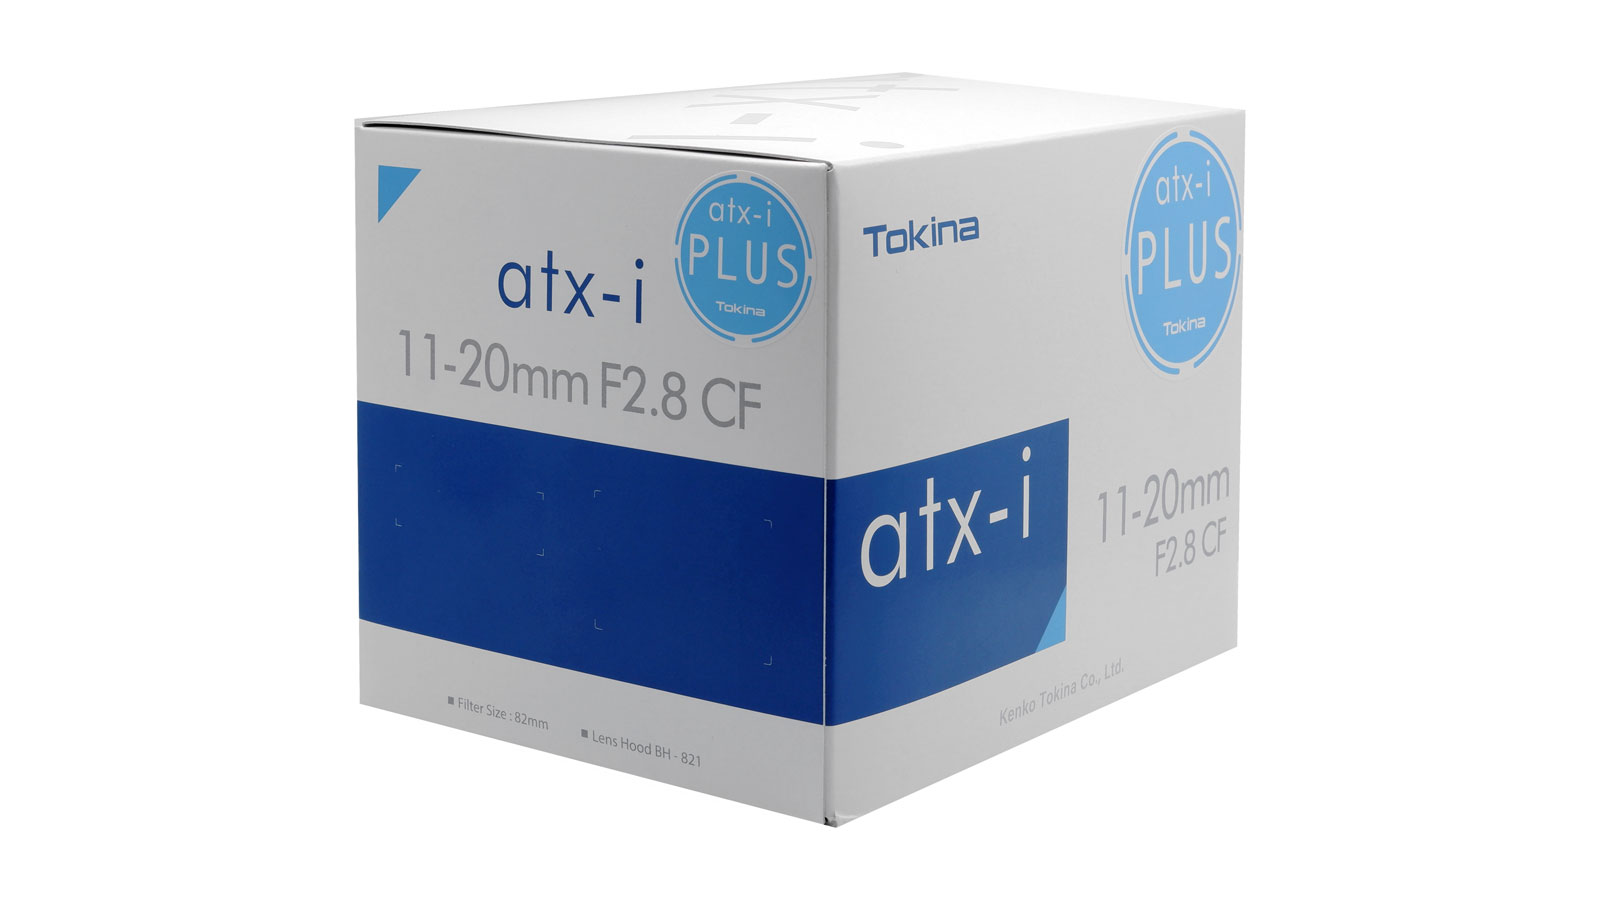 Пример упаковки серии Tokina atx-i с наклейкой "PLUS".